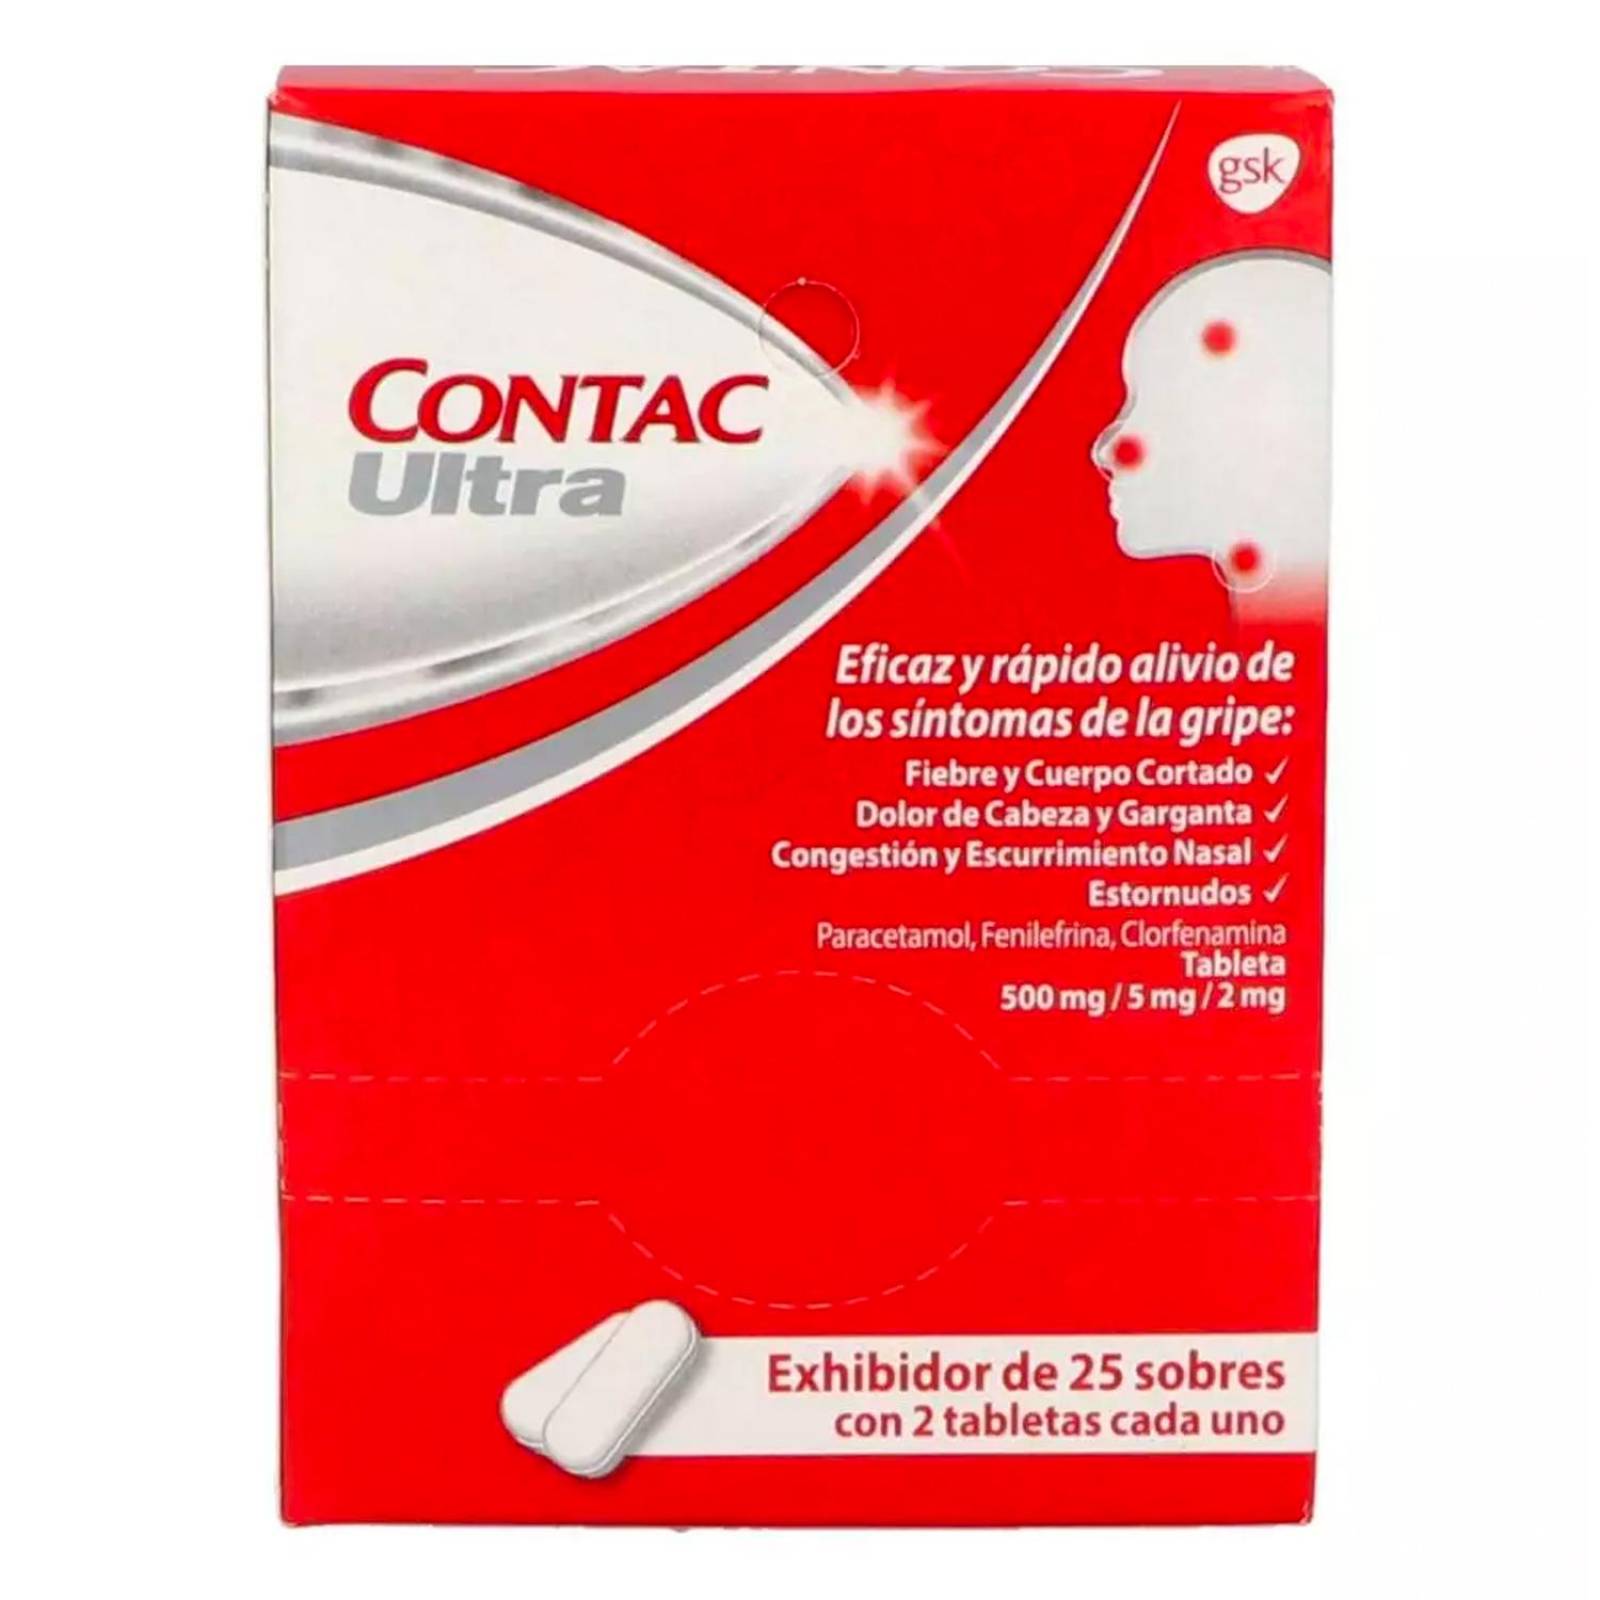 Antigripal Contac Ultra 25 sobres con 2 tabletas